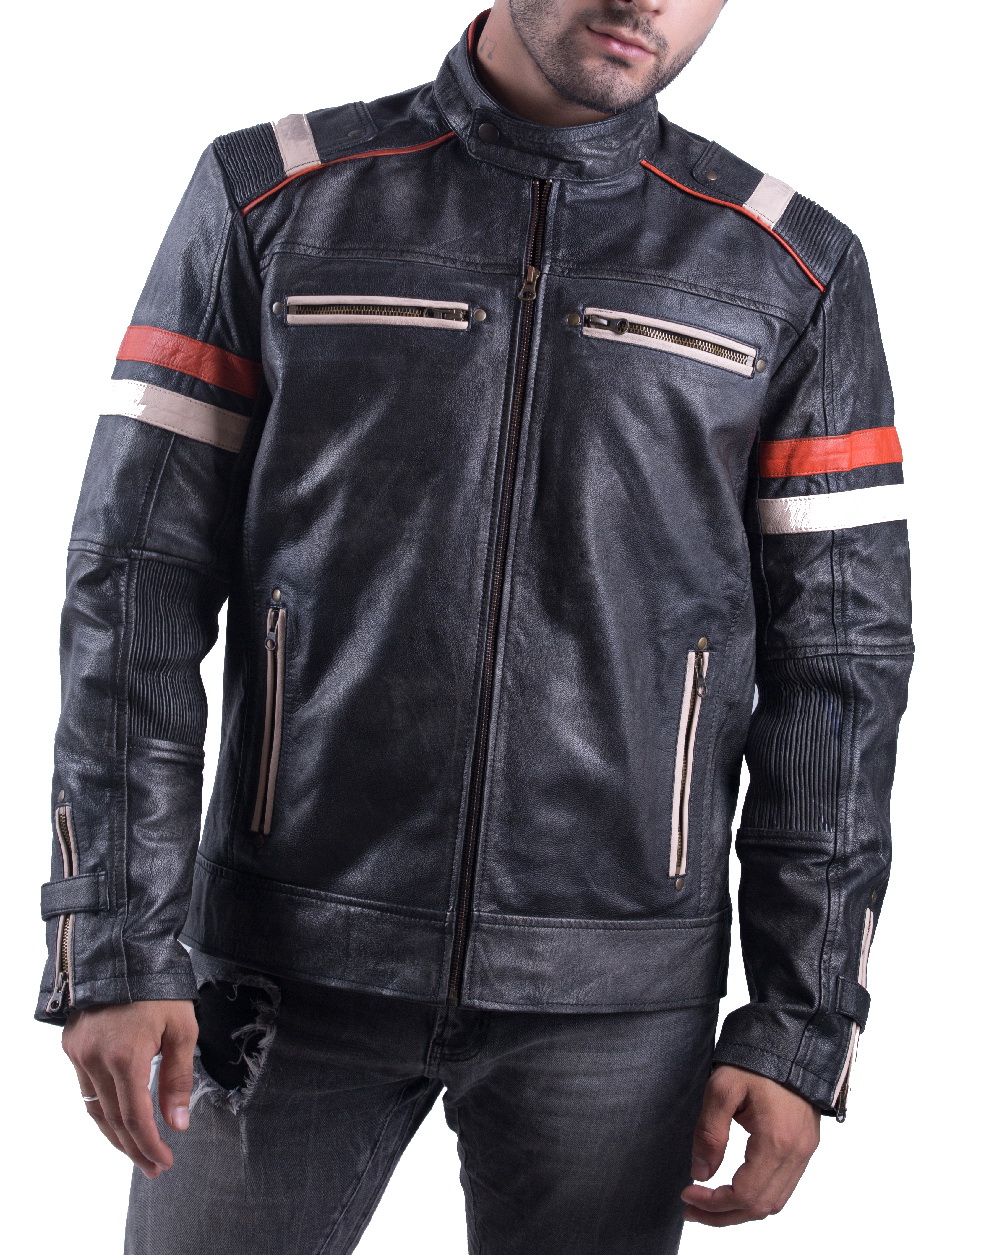 Buy Retro 2 Leather Jacket